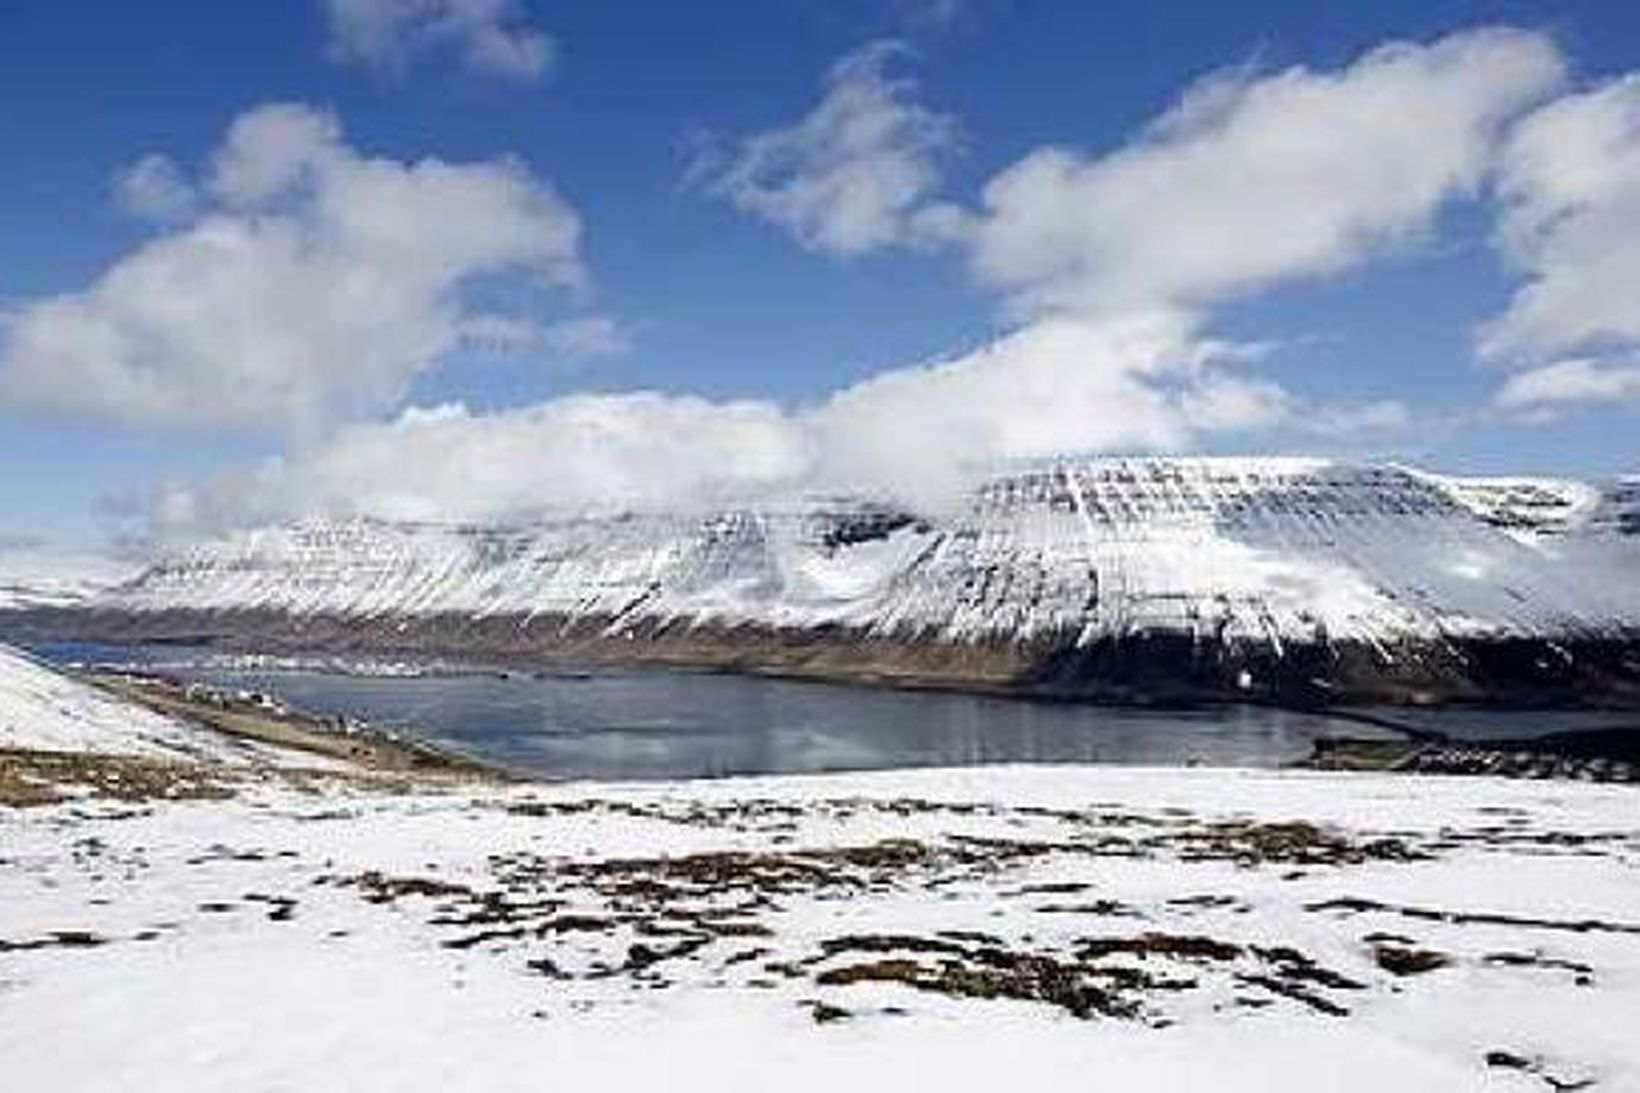 Snjóflóðahætta hefur verið við Ísafjarðardjúp.